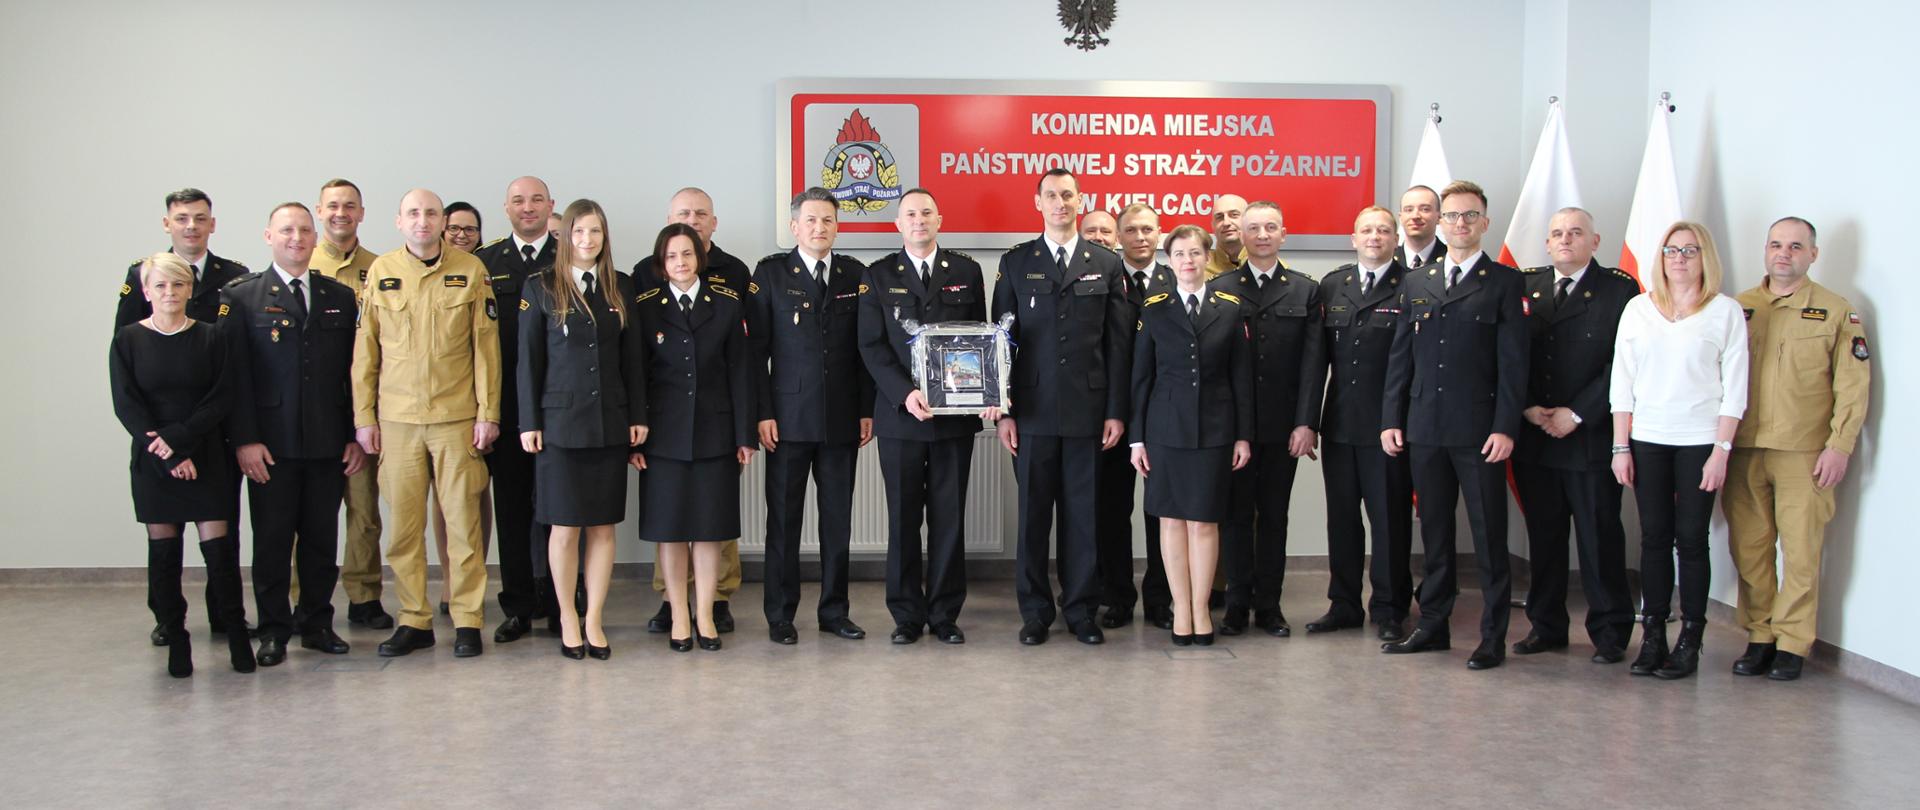 Na zdjęciu przedstawiono zgromadzonych funkcjonariuszy i pracowników Komendy Miejskiej Państwowej Straży Pożarnej w Kielcach wraz z odchodzącym komendantem.